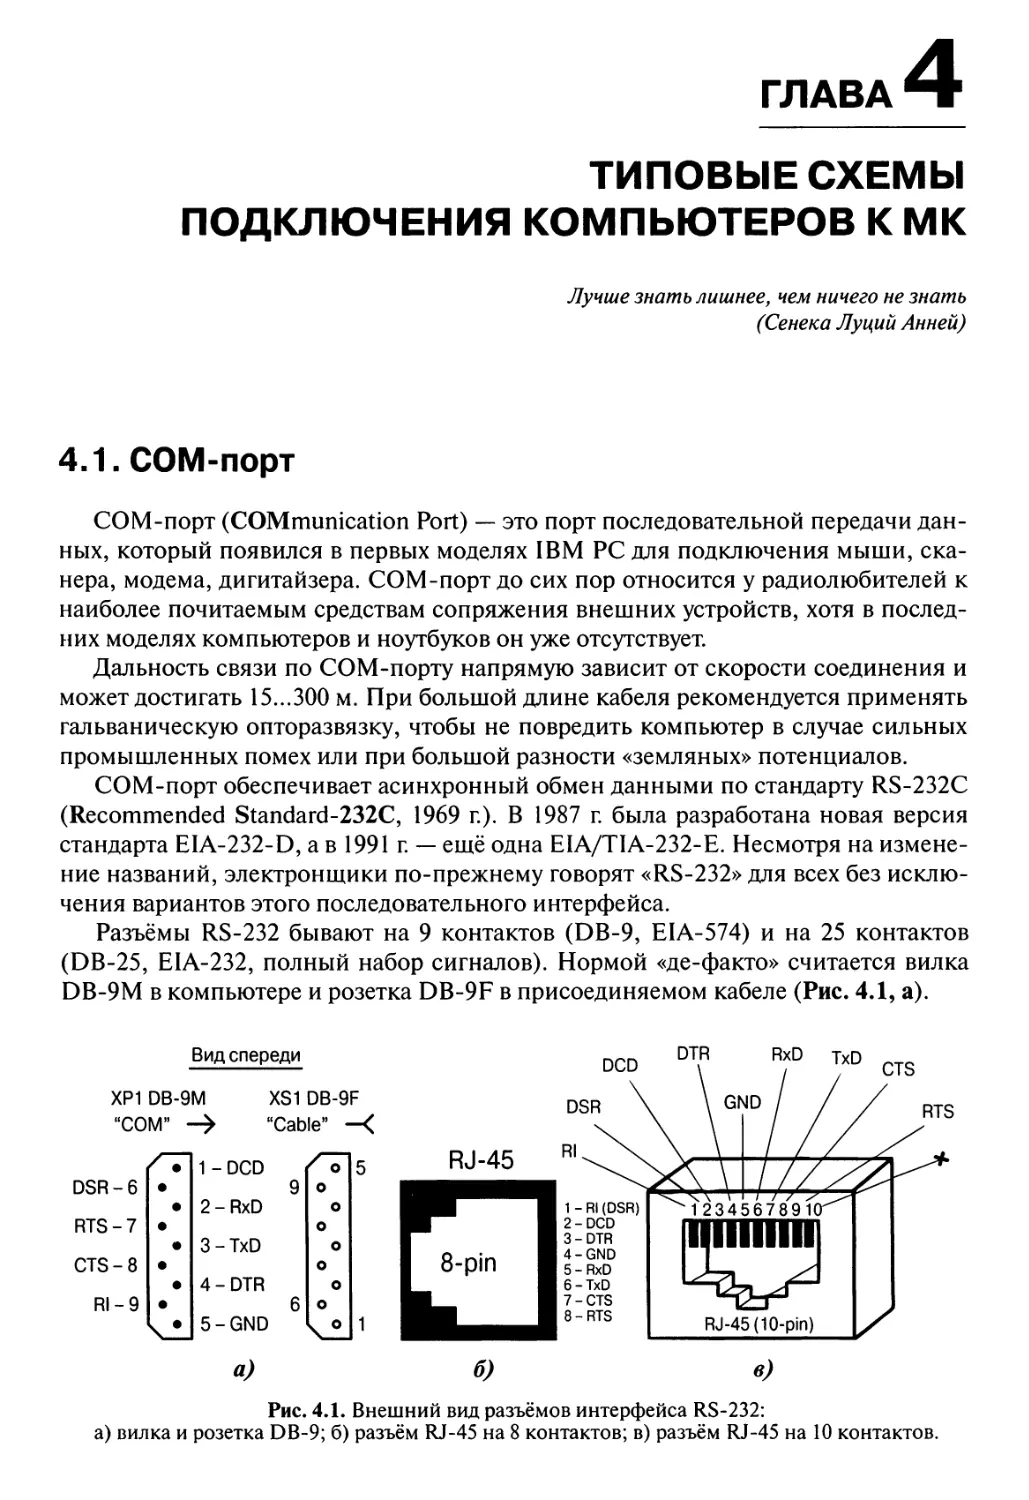 Глава 4. Типовые схемы подключения компьютеров к МК
4.1. СОМ-порт